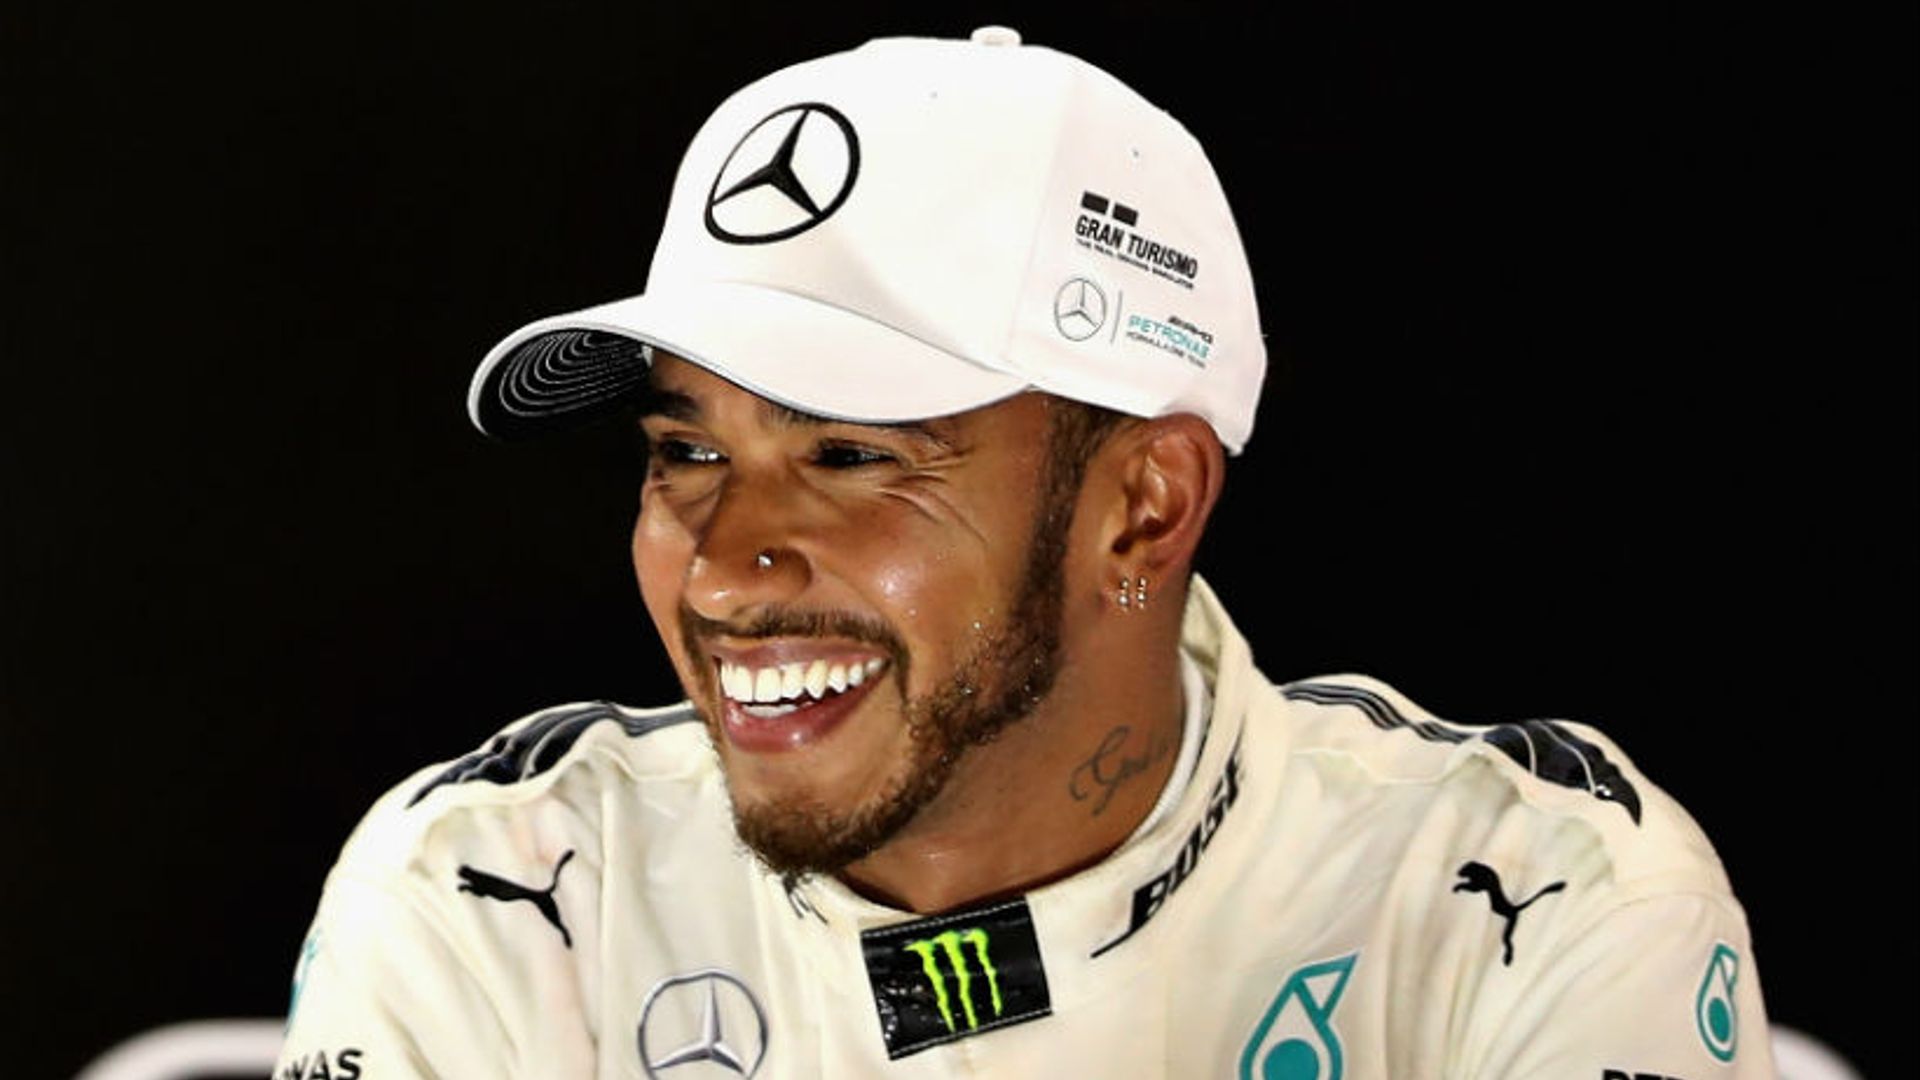 Káº¿t quáº£ hÃ¬nh áº£nh cho Lewis Hamilton officially became the richest racer in the F1 history